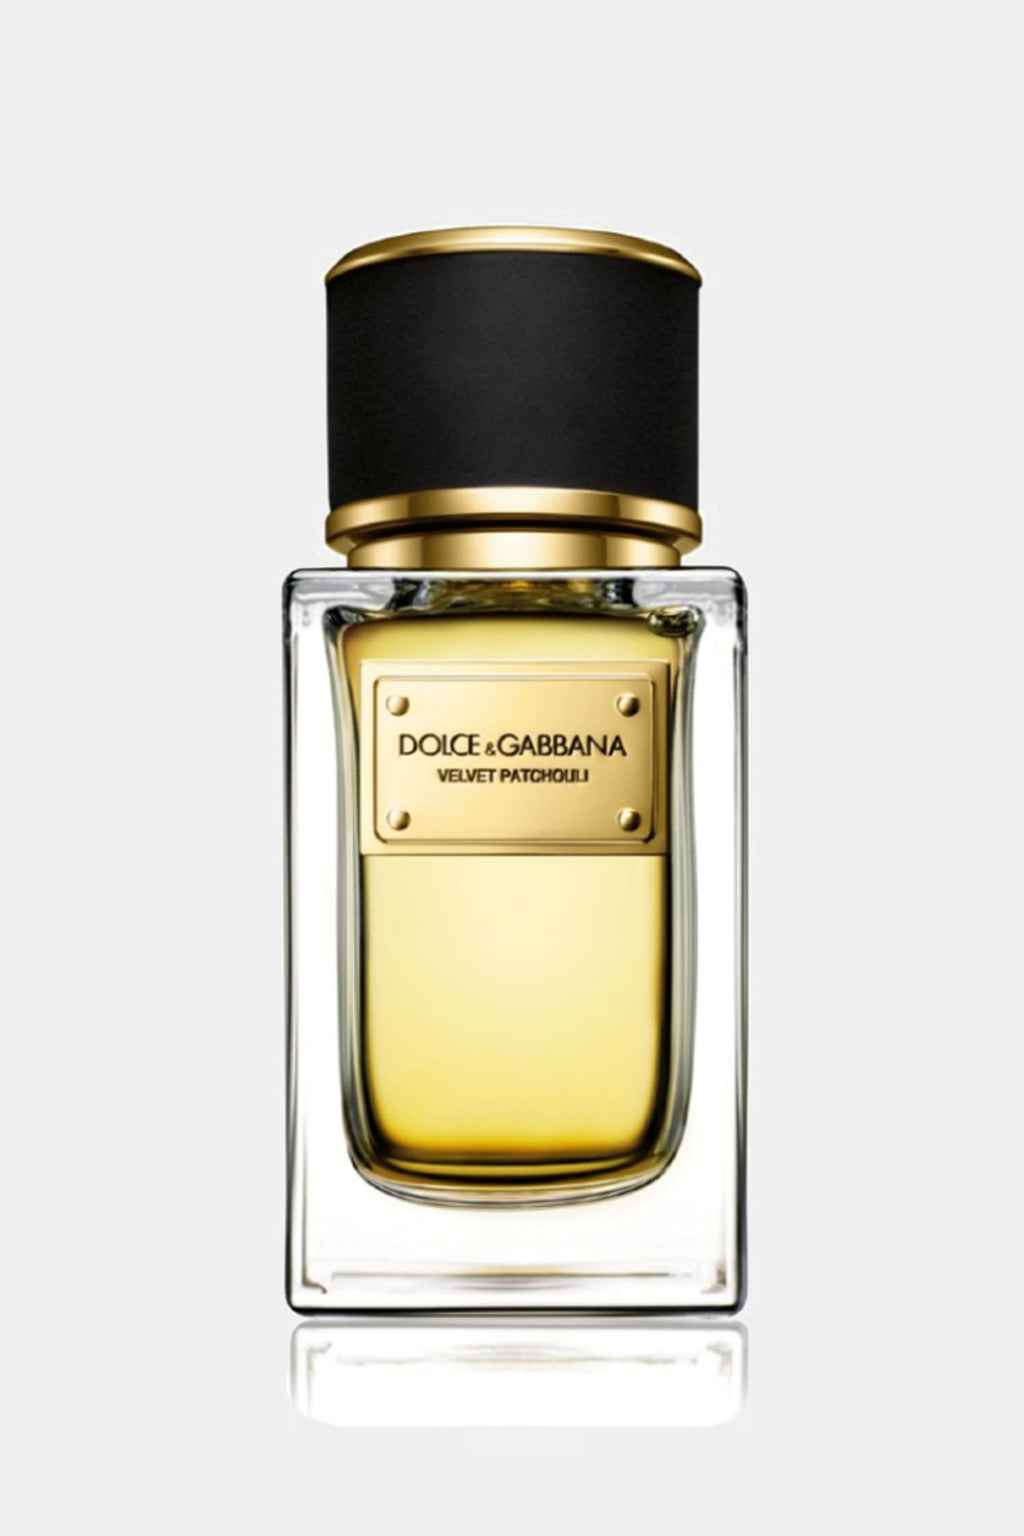 Dolce & Gabbana -  Velvet Patchouli Eau de Parfum